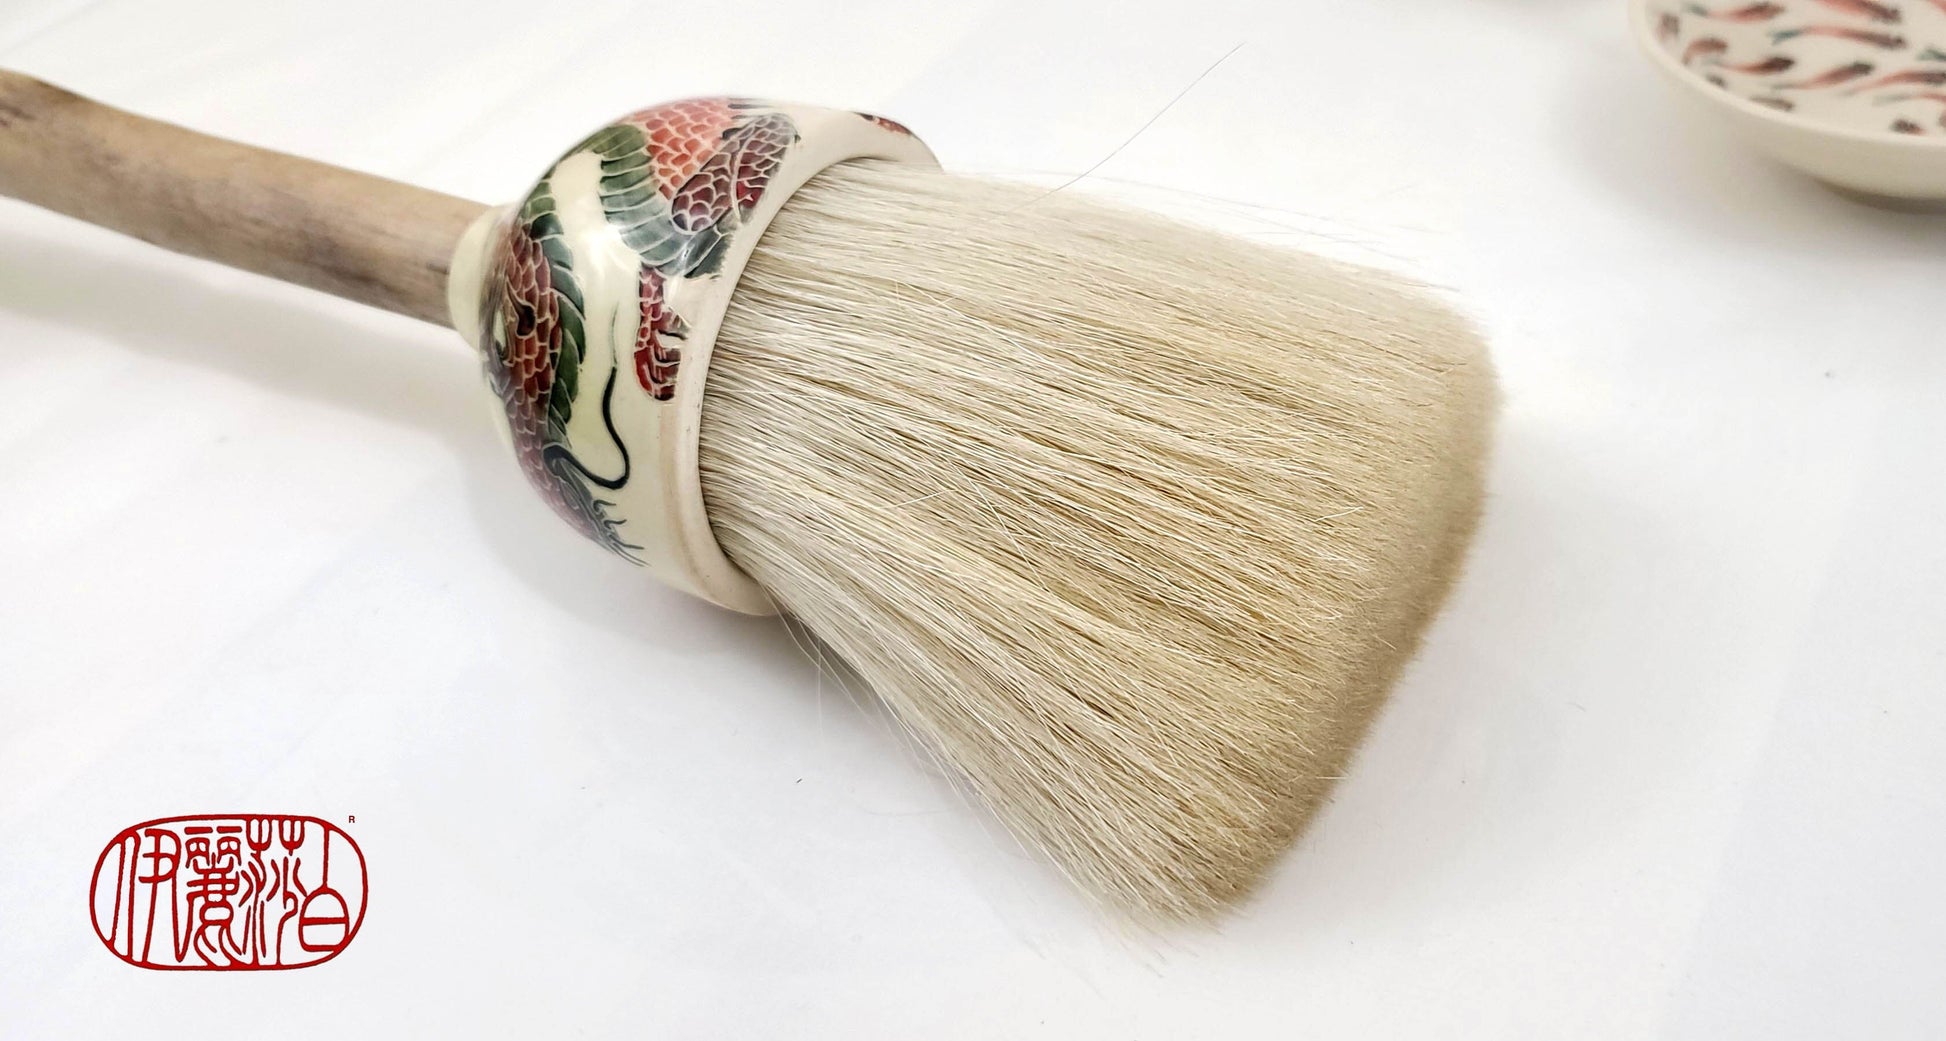 Round brush, white horse hair